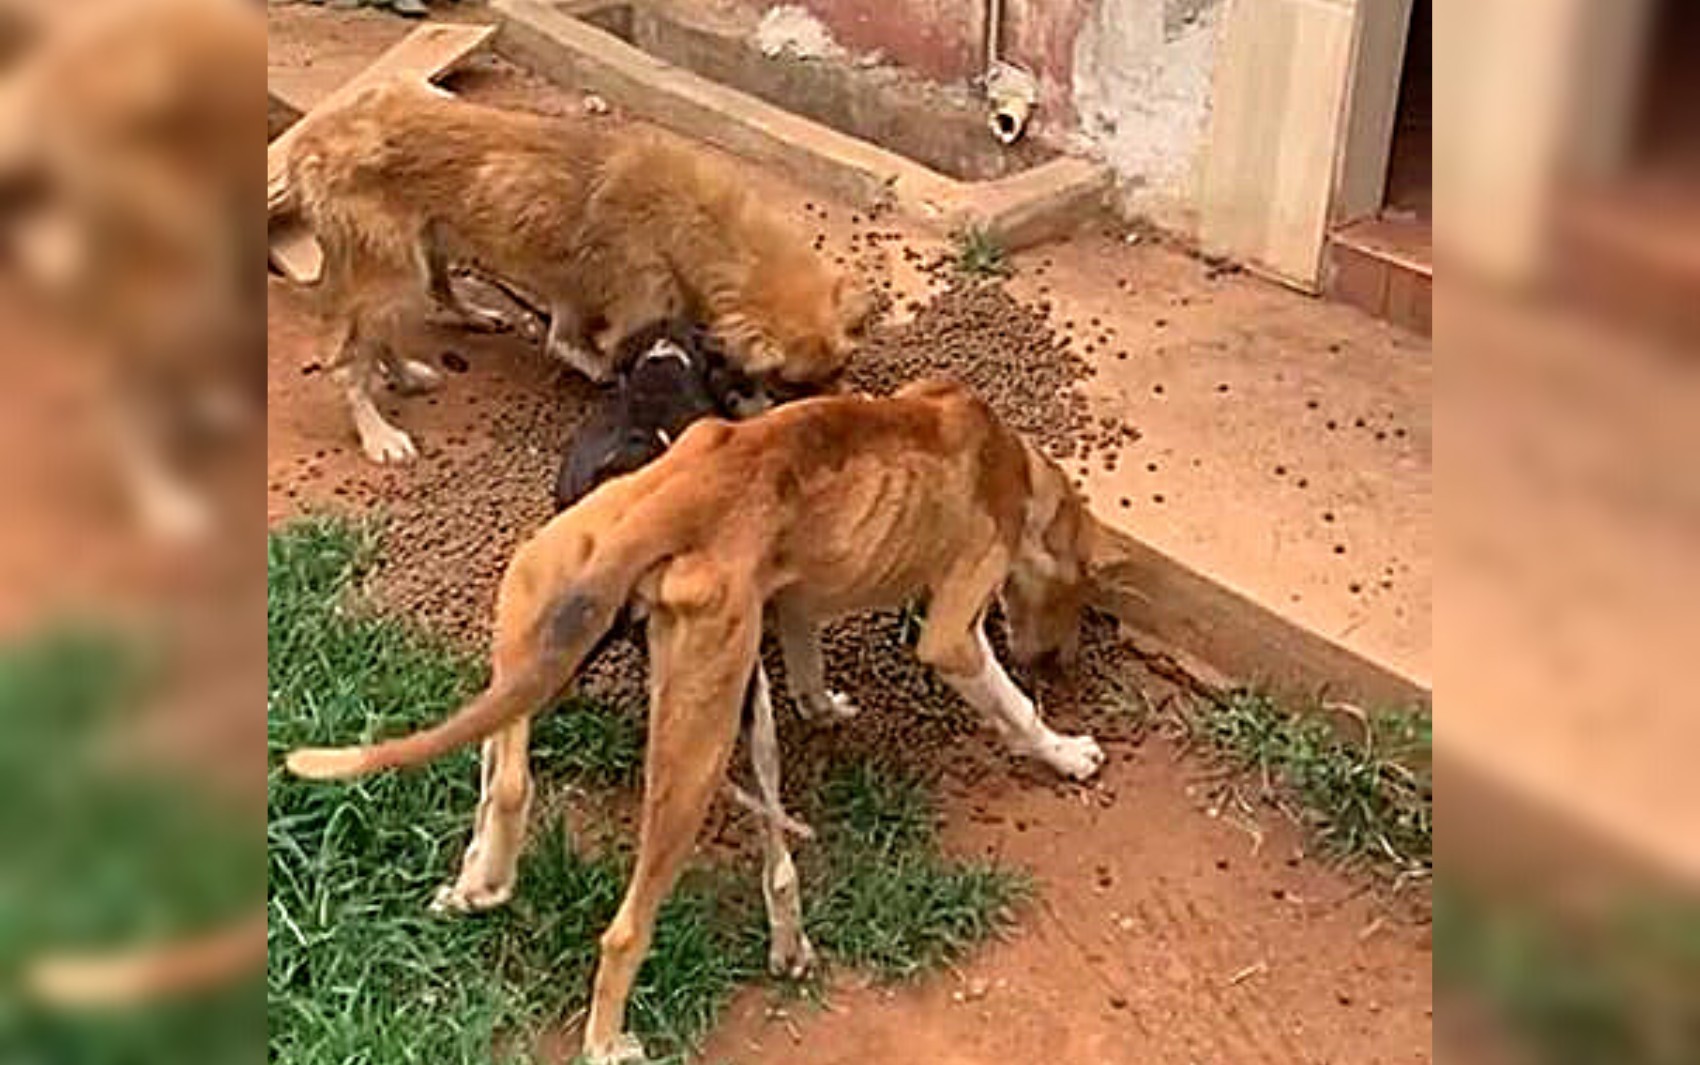 
Irmãos advogados são presos suspeitos de maus-tratos após seis cães serem achados esqueléticos no quintal de escritório; vídeo